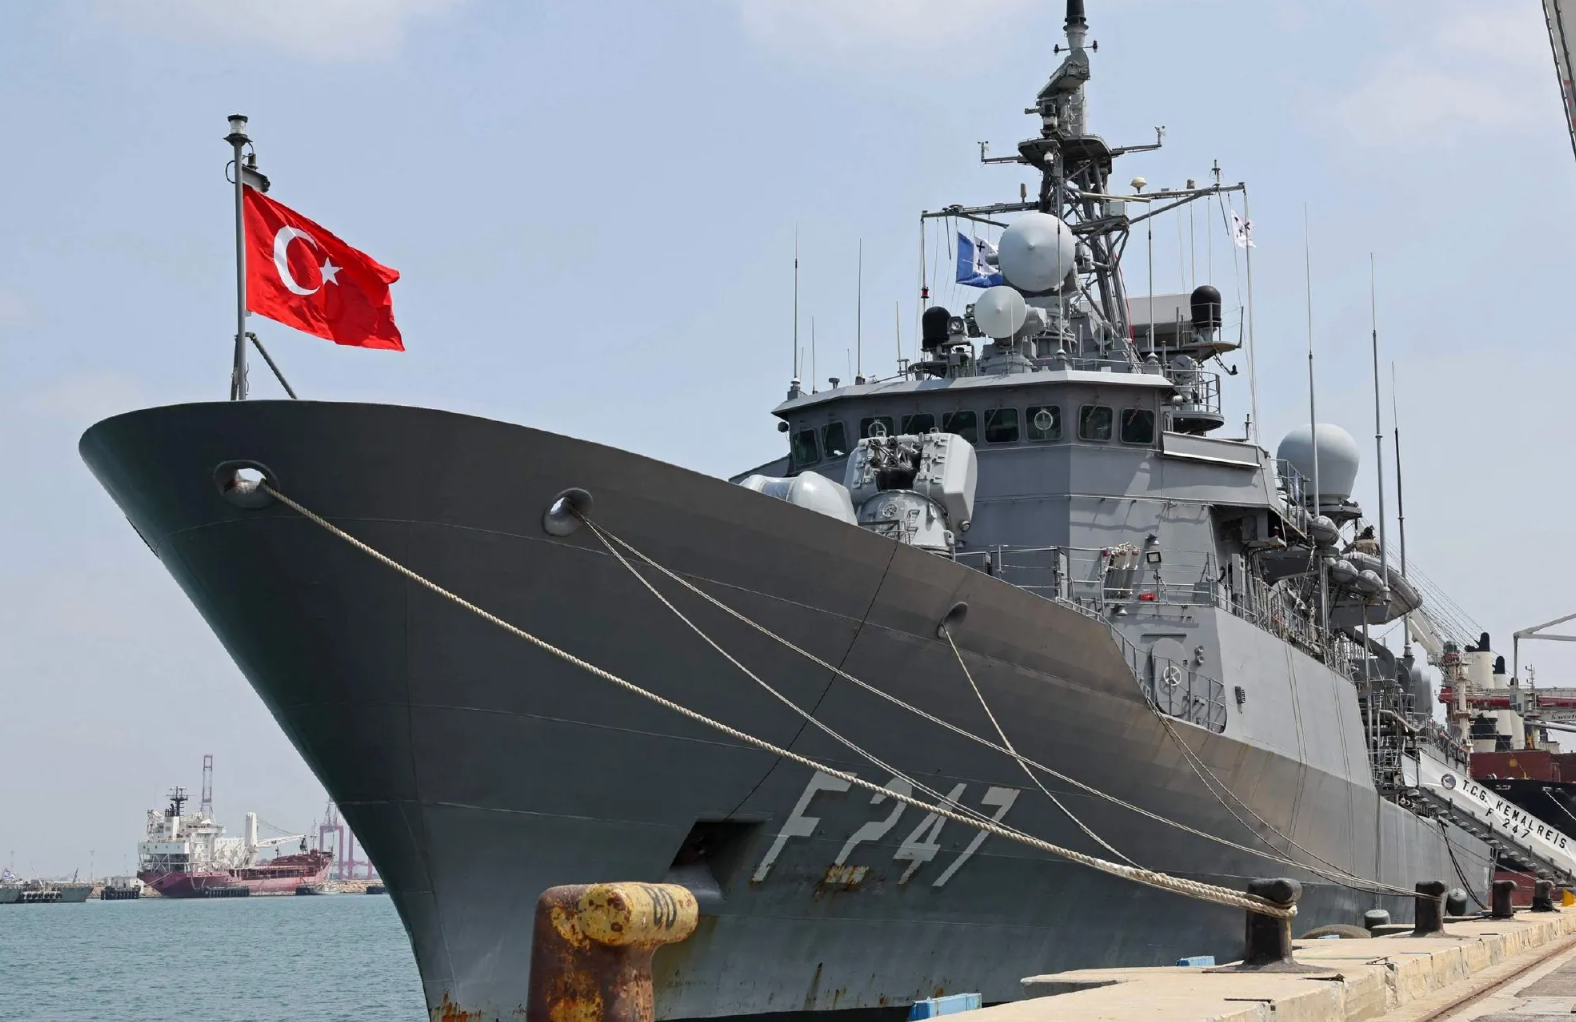 热点新闻:据路透社报道,9月3日土耳其海军"凯末尔·雷斯"号护卫舰停靠